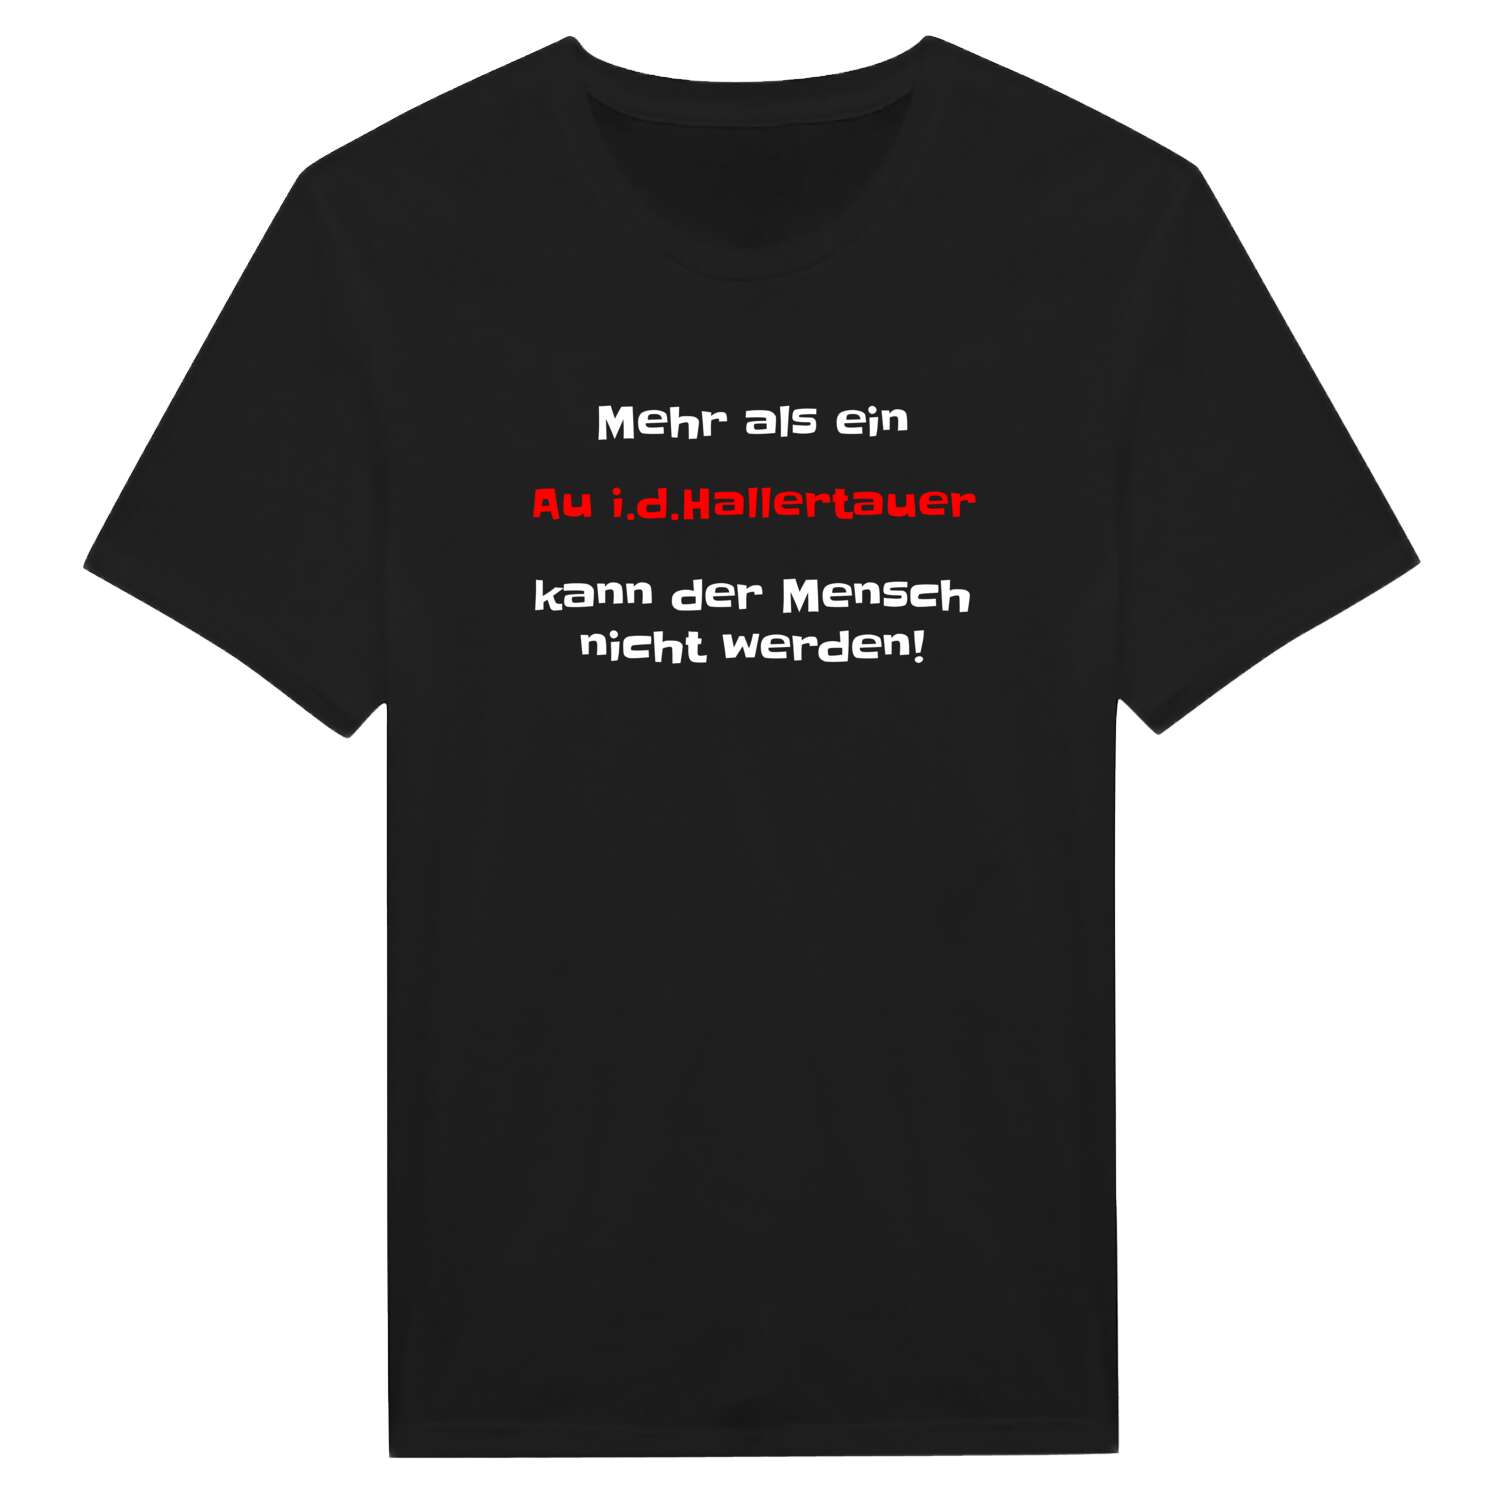 Au i.d.Hallertau T-Shirt »Mehr als ein«